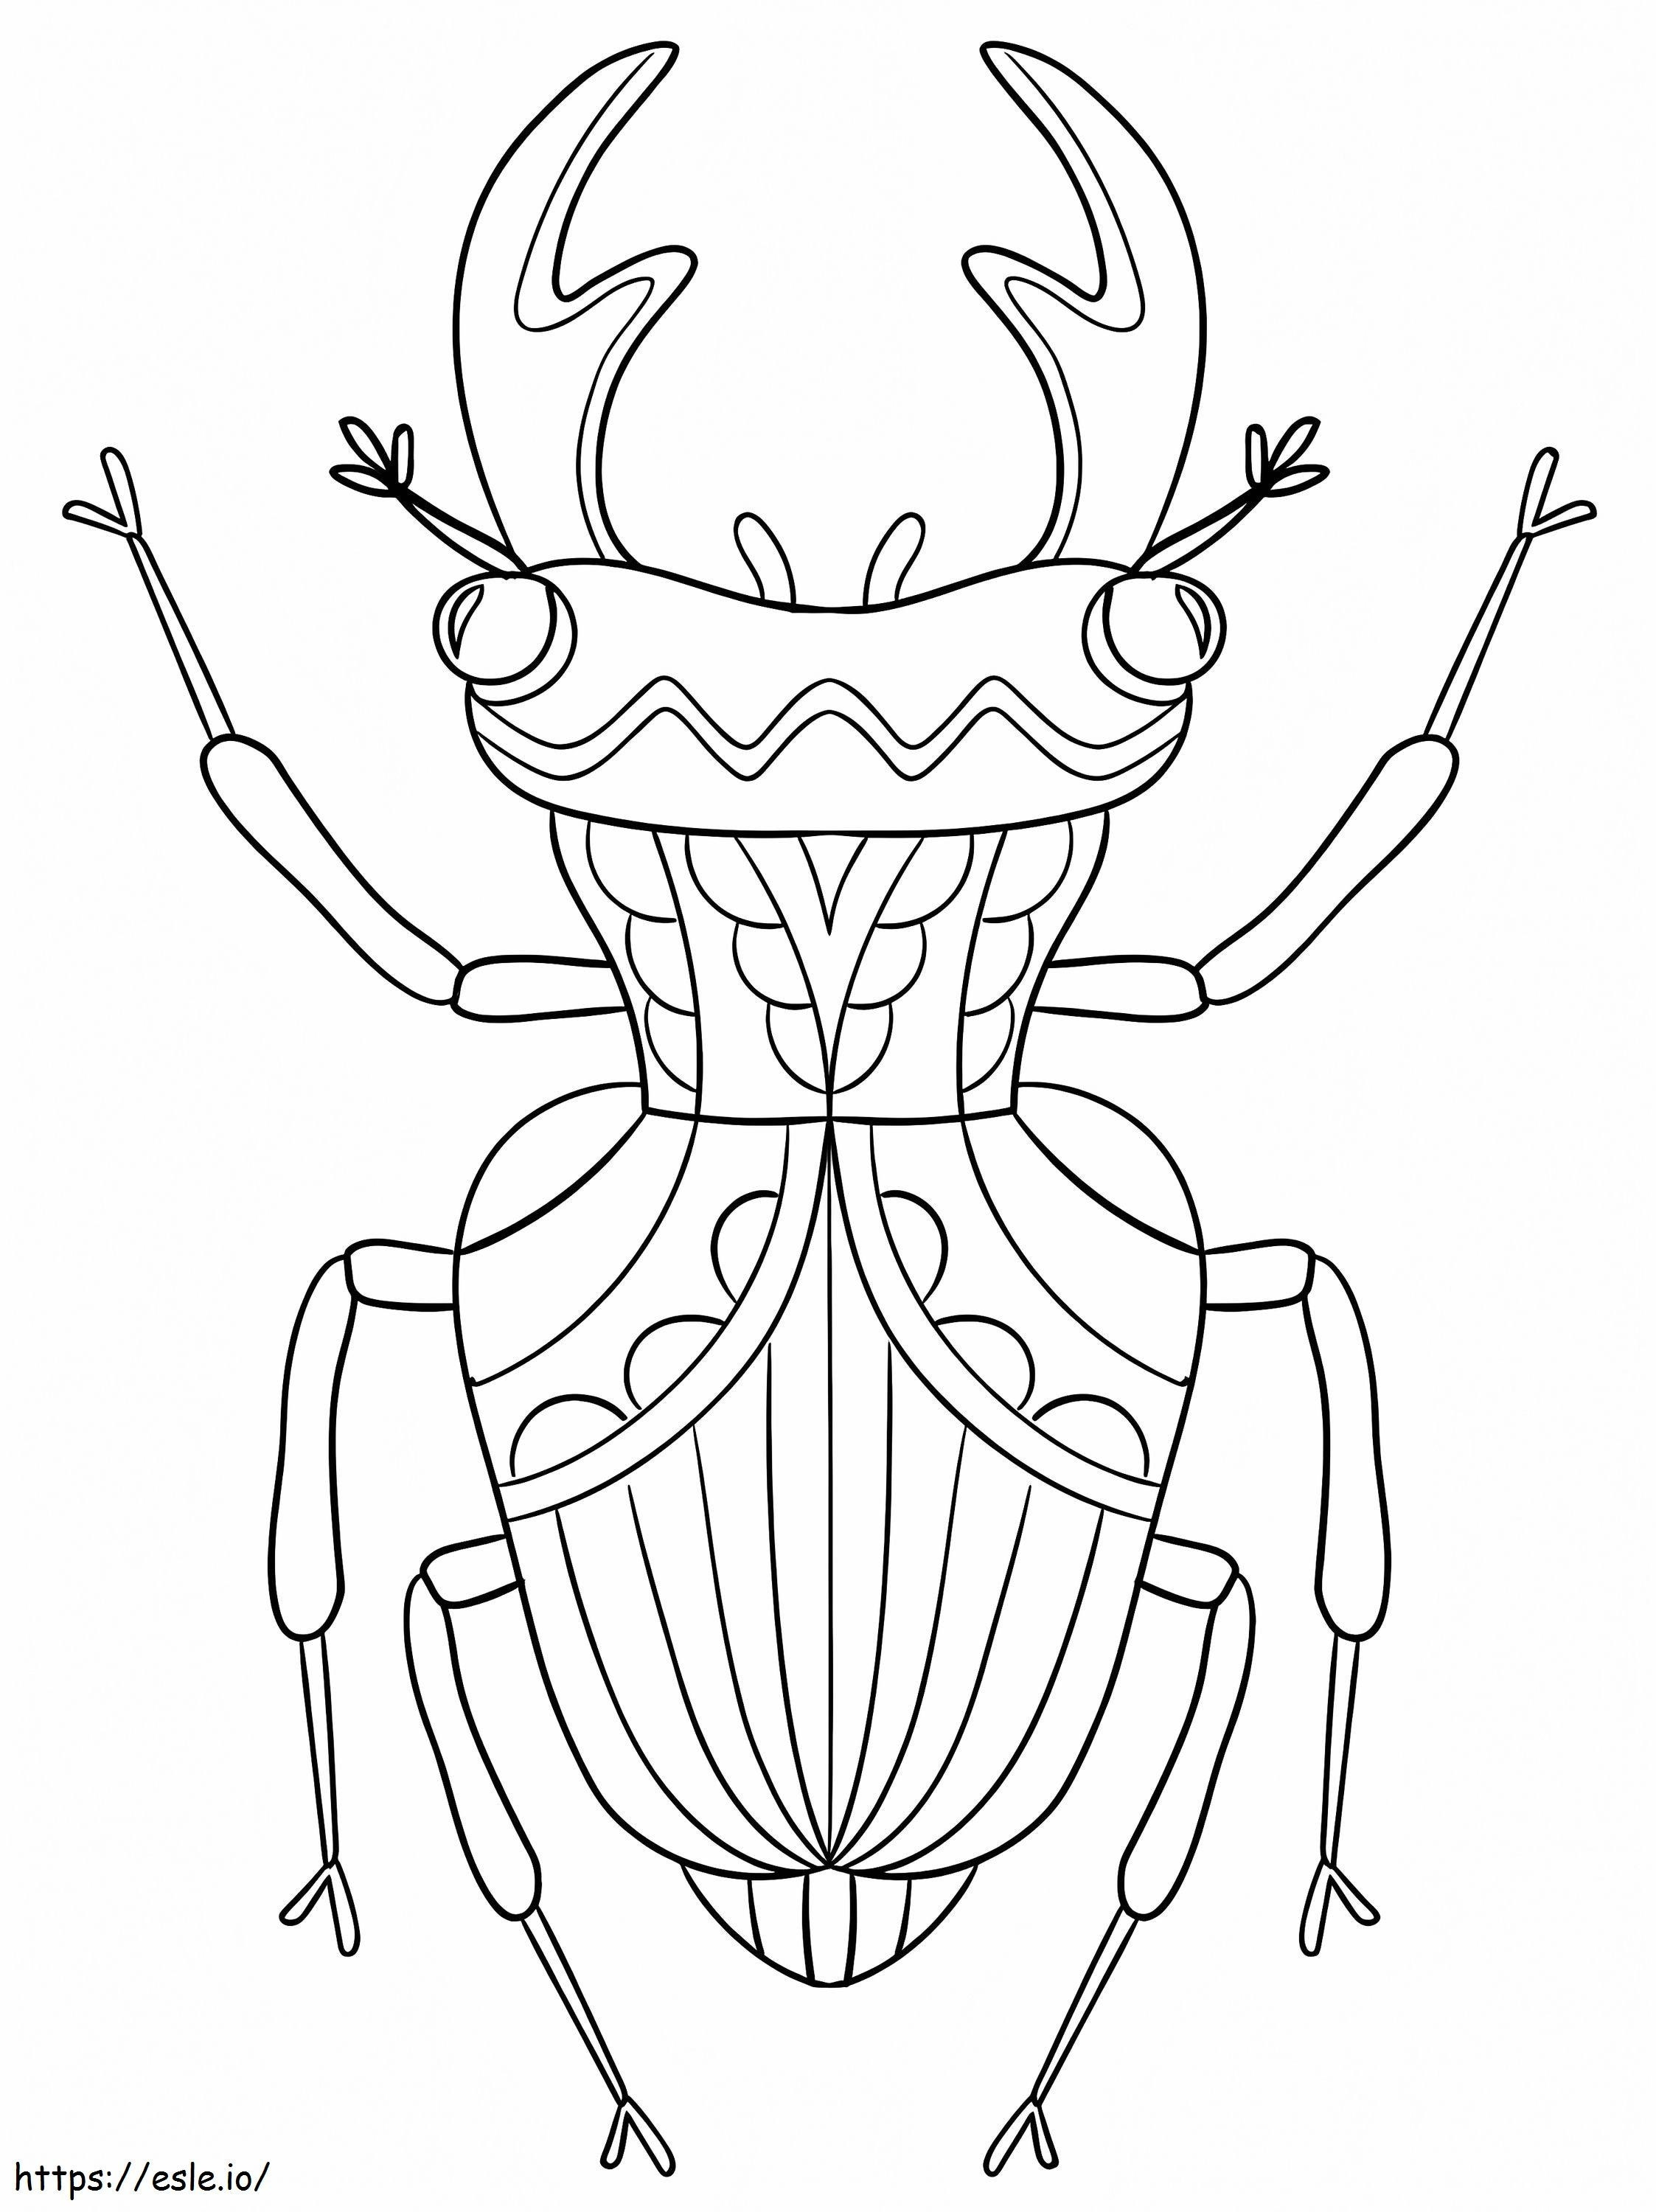 Escarabajo encantador para colorear